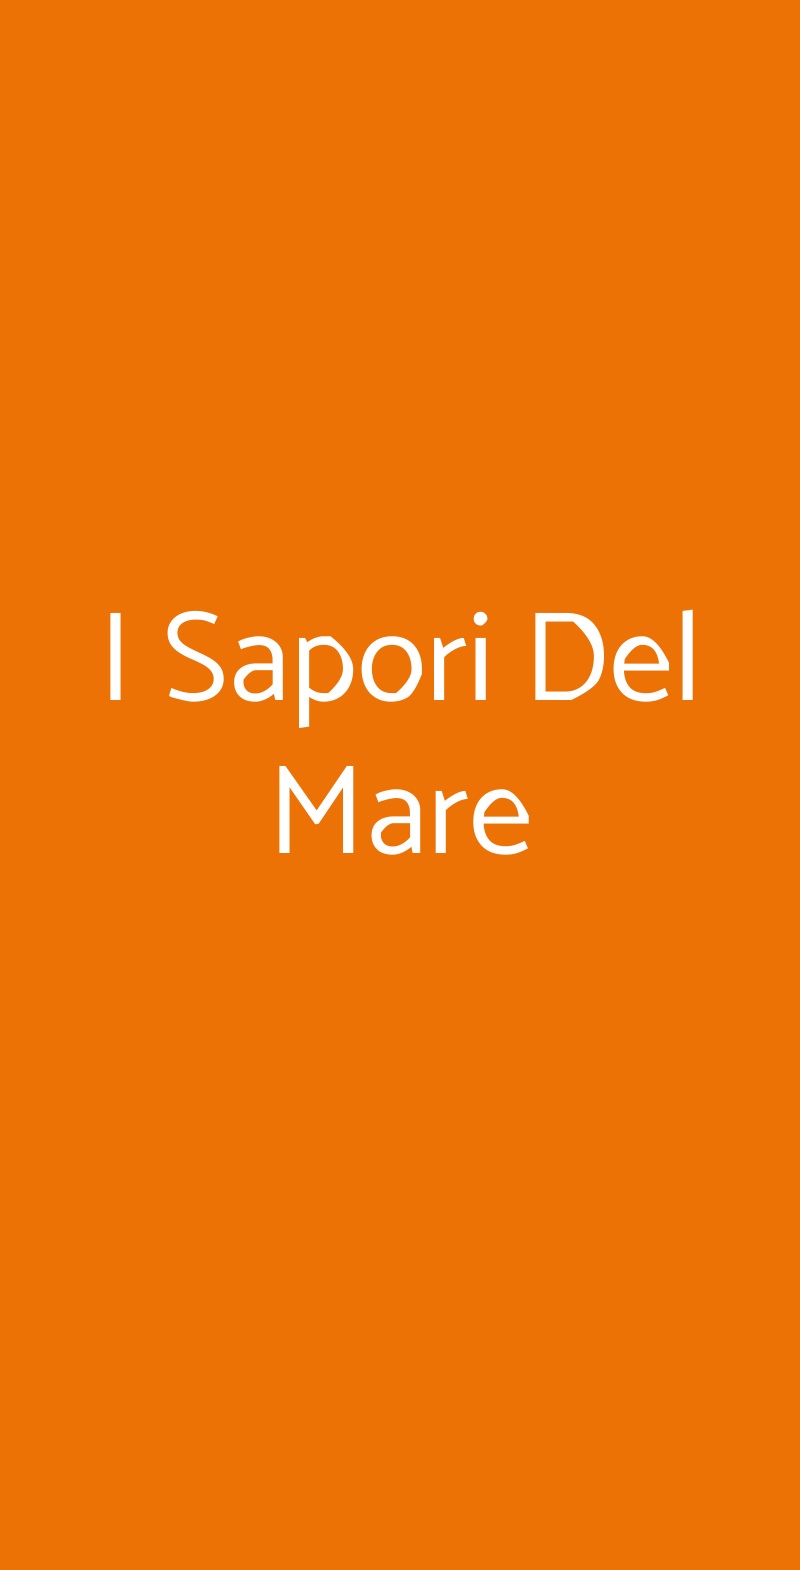 I Sapori Del Mare Lecce menù 1 pagina